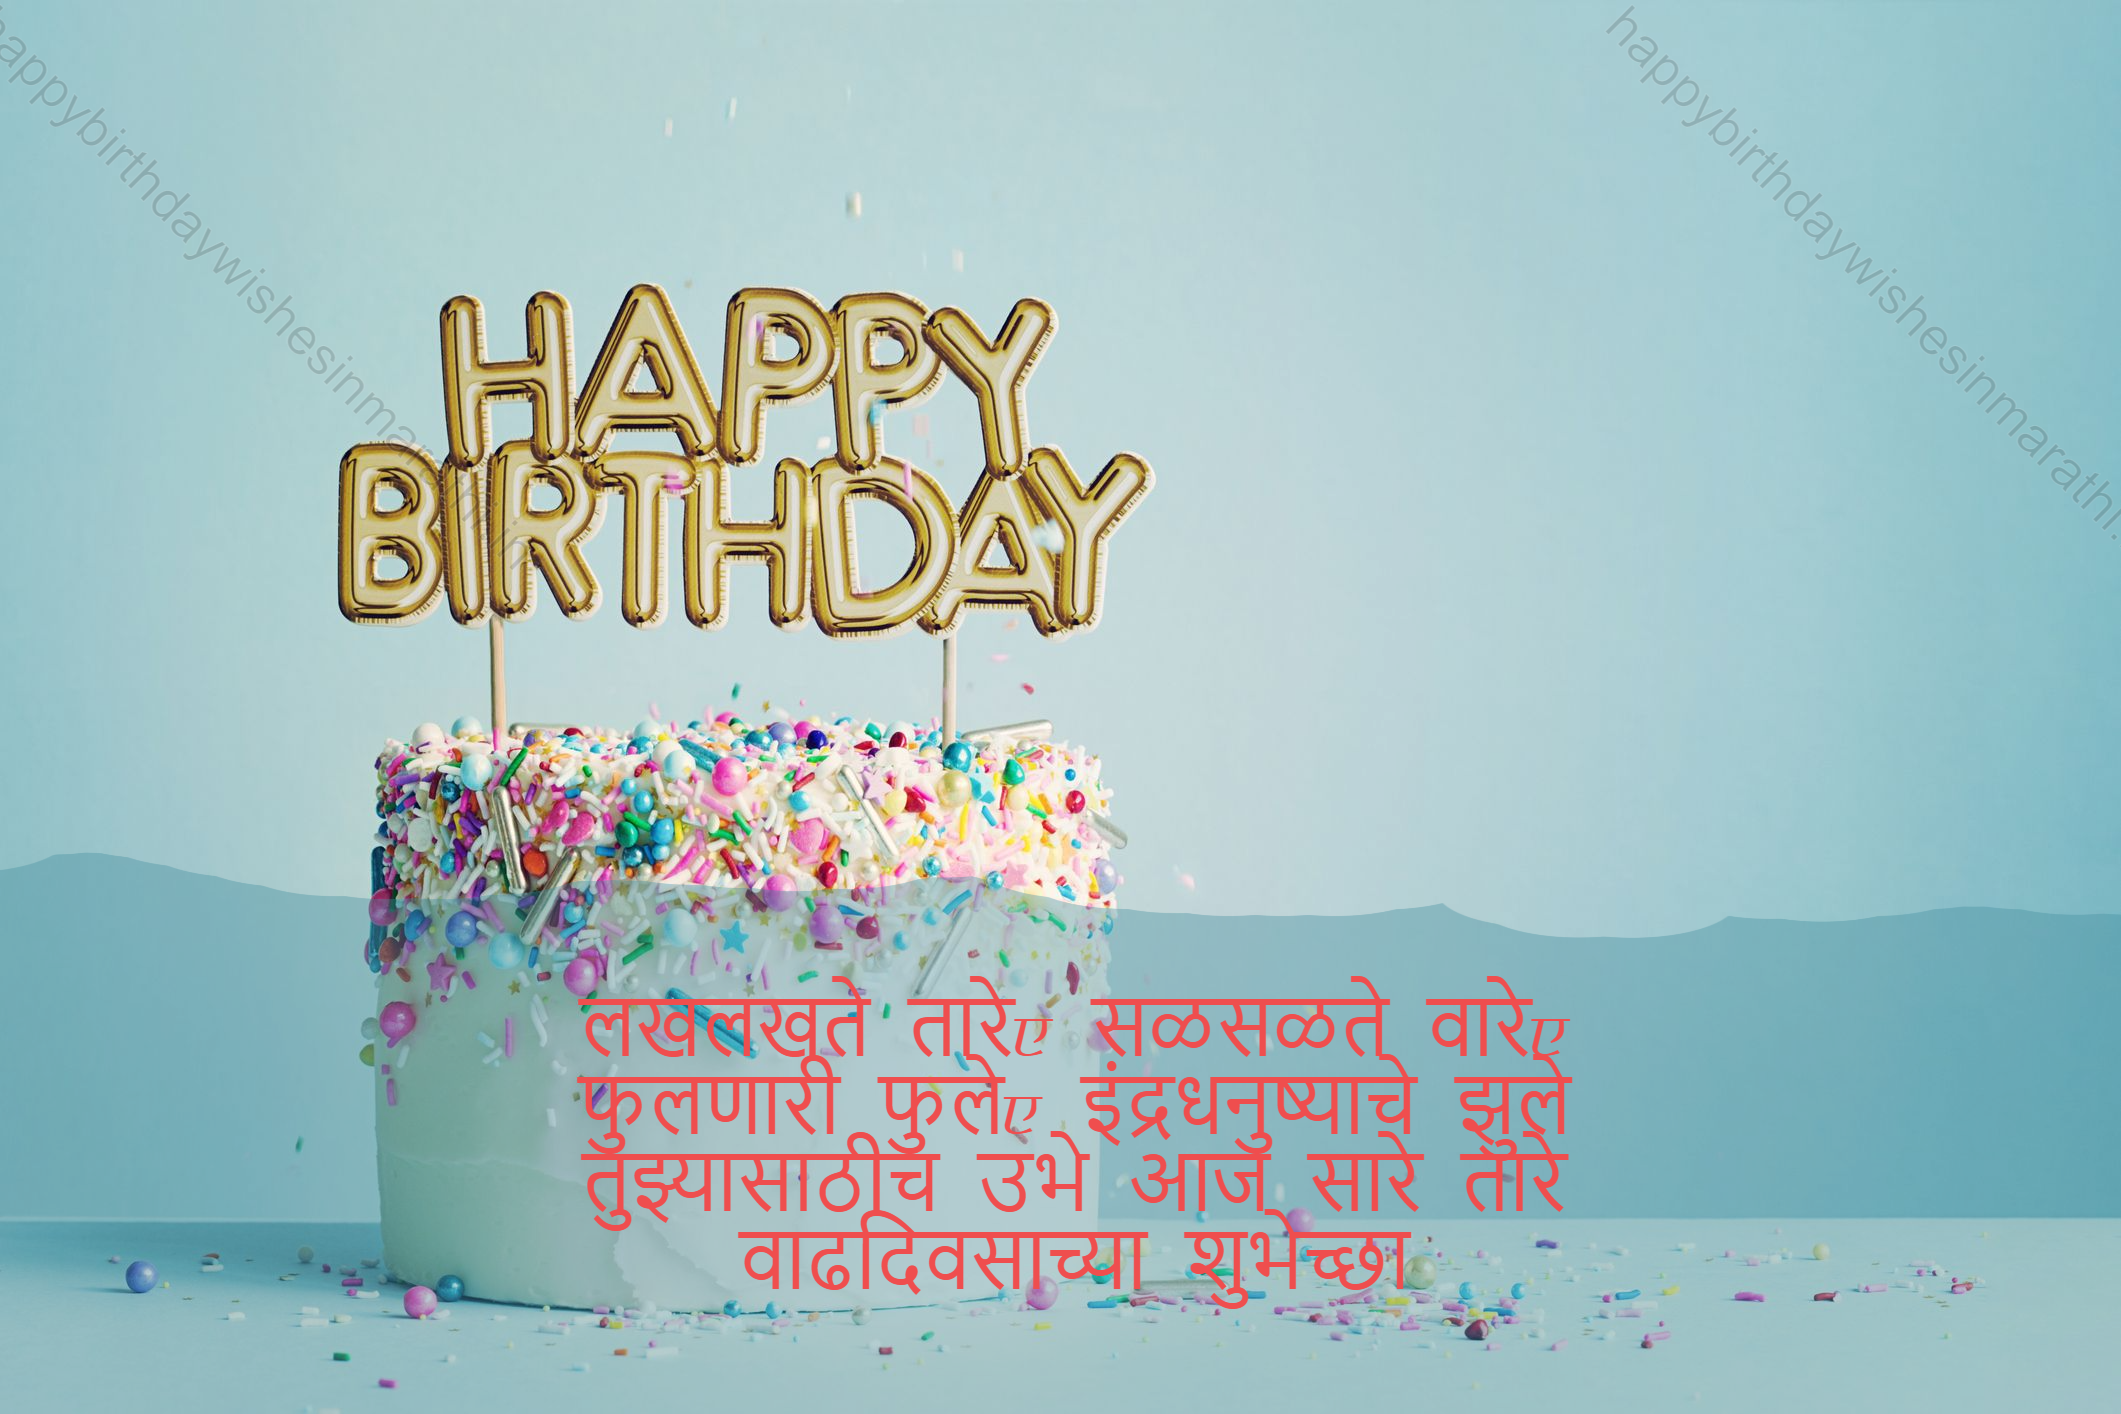 Birthday Wishes For Best Friend In Marathi